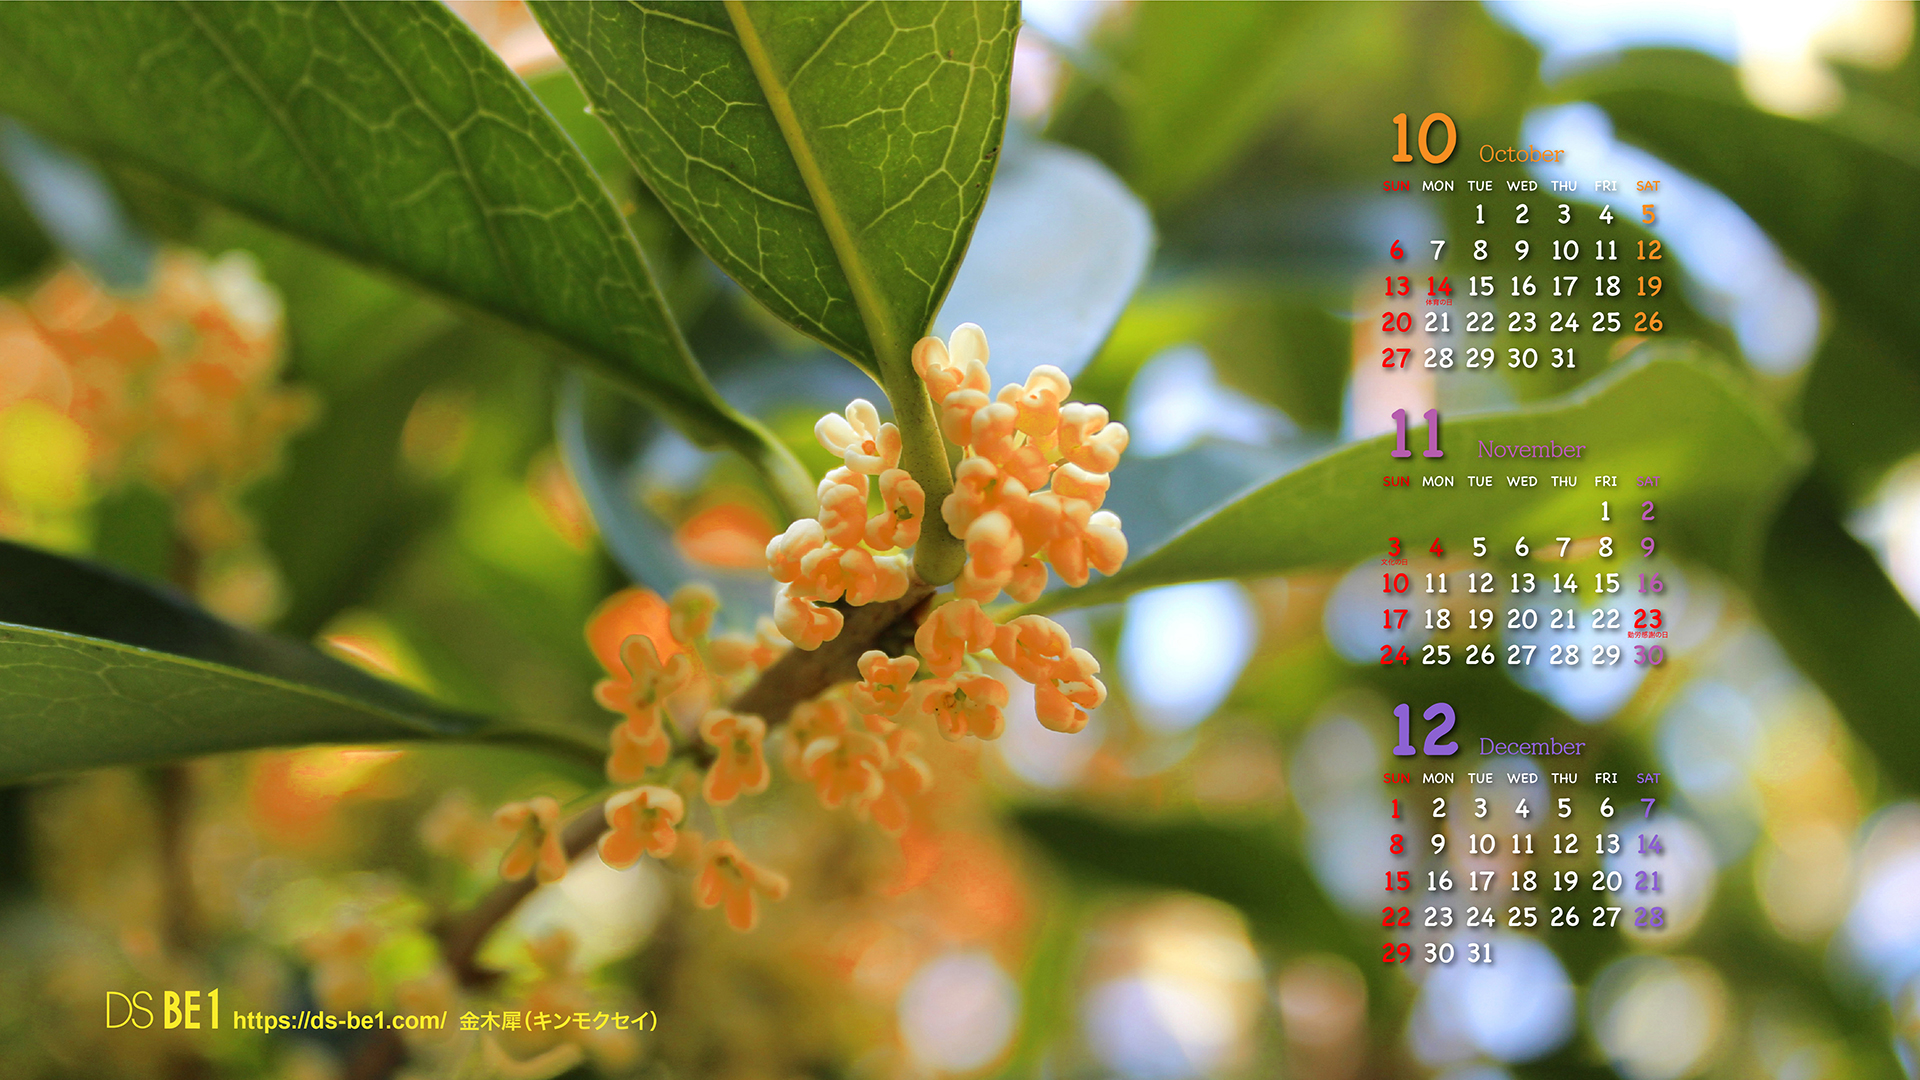 ビーワン 季節の壁紙カレンダー３ヶ月付 2019年10月 パソコン